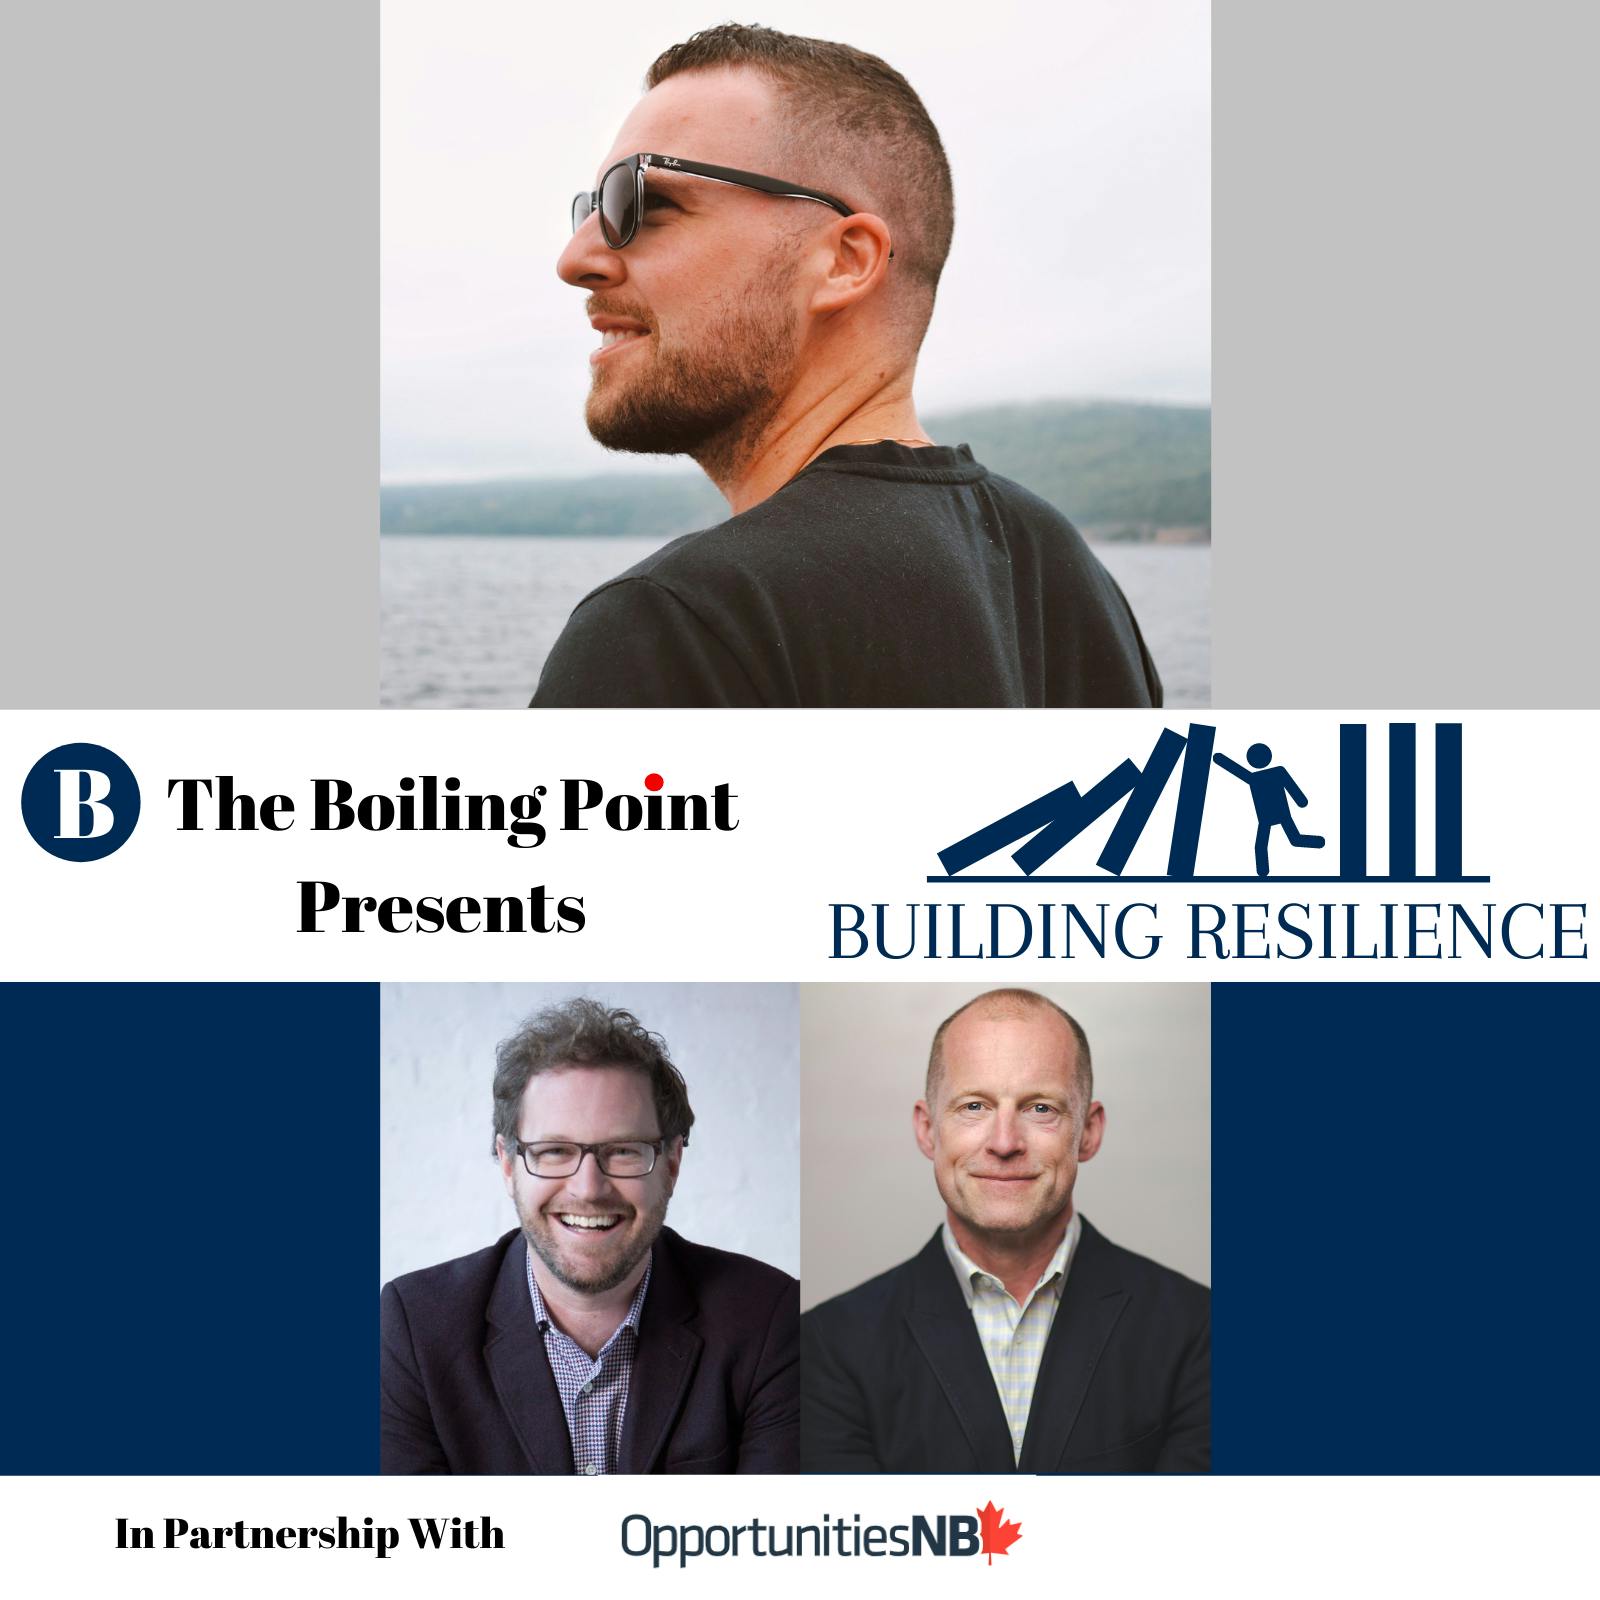 Building Resilience: An Unsettled Entrepreneurship Story